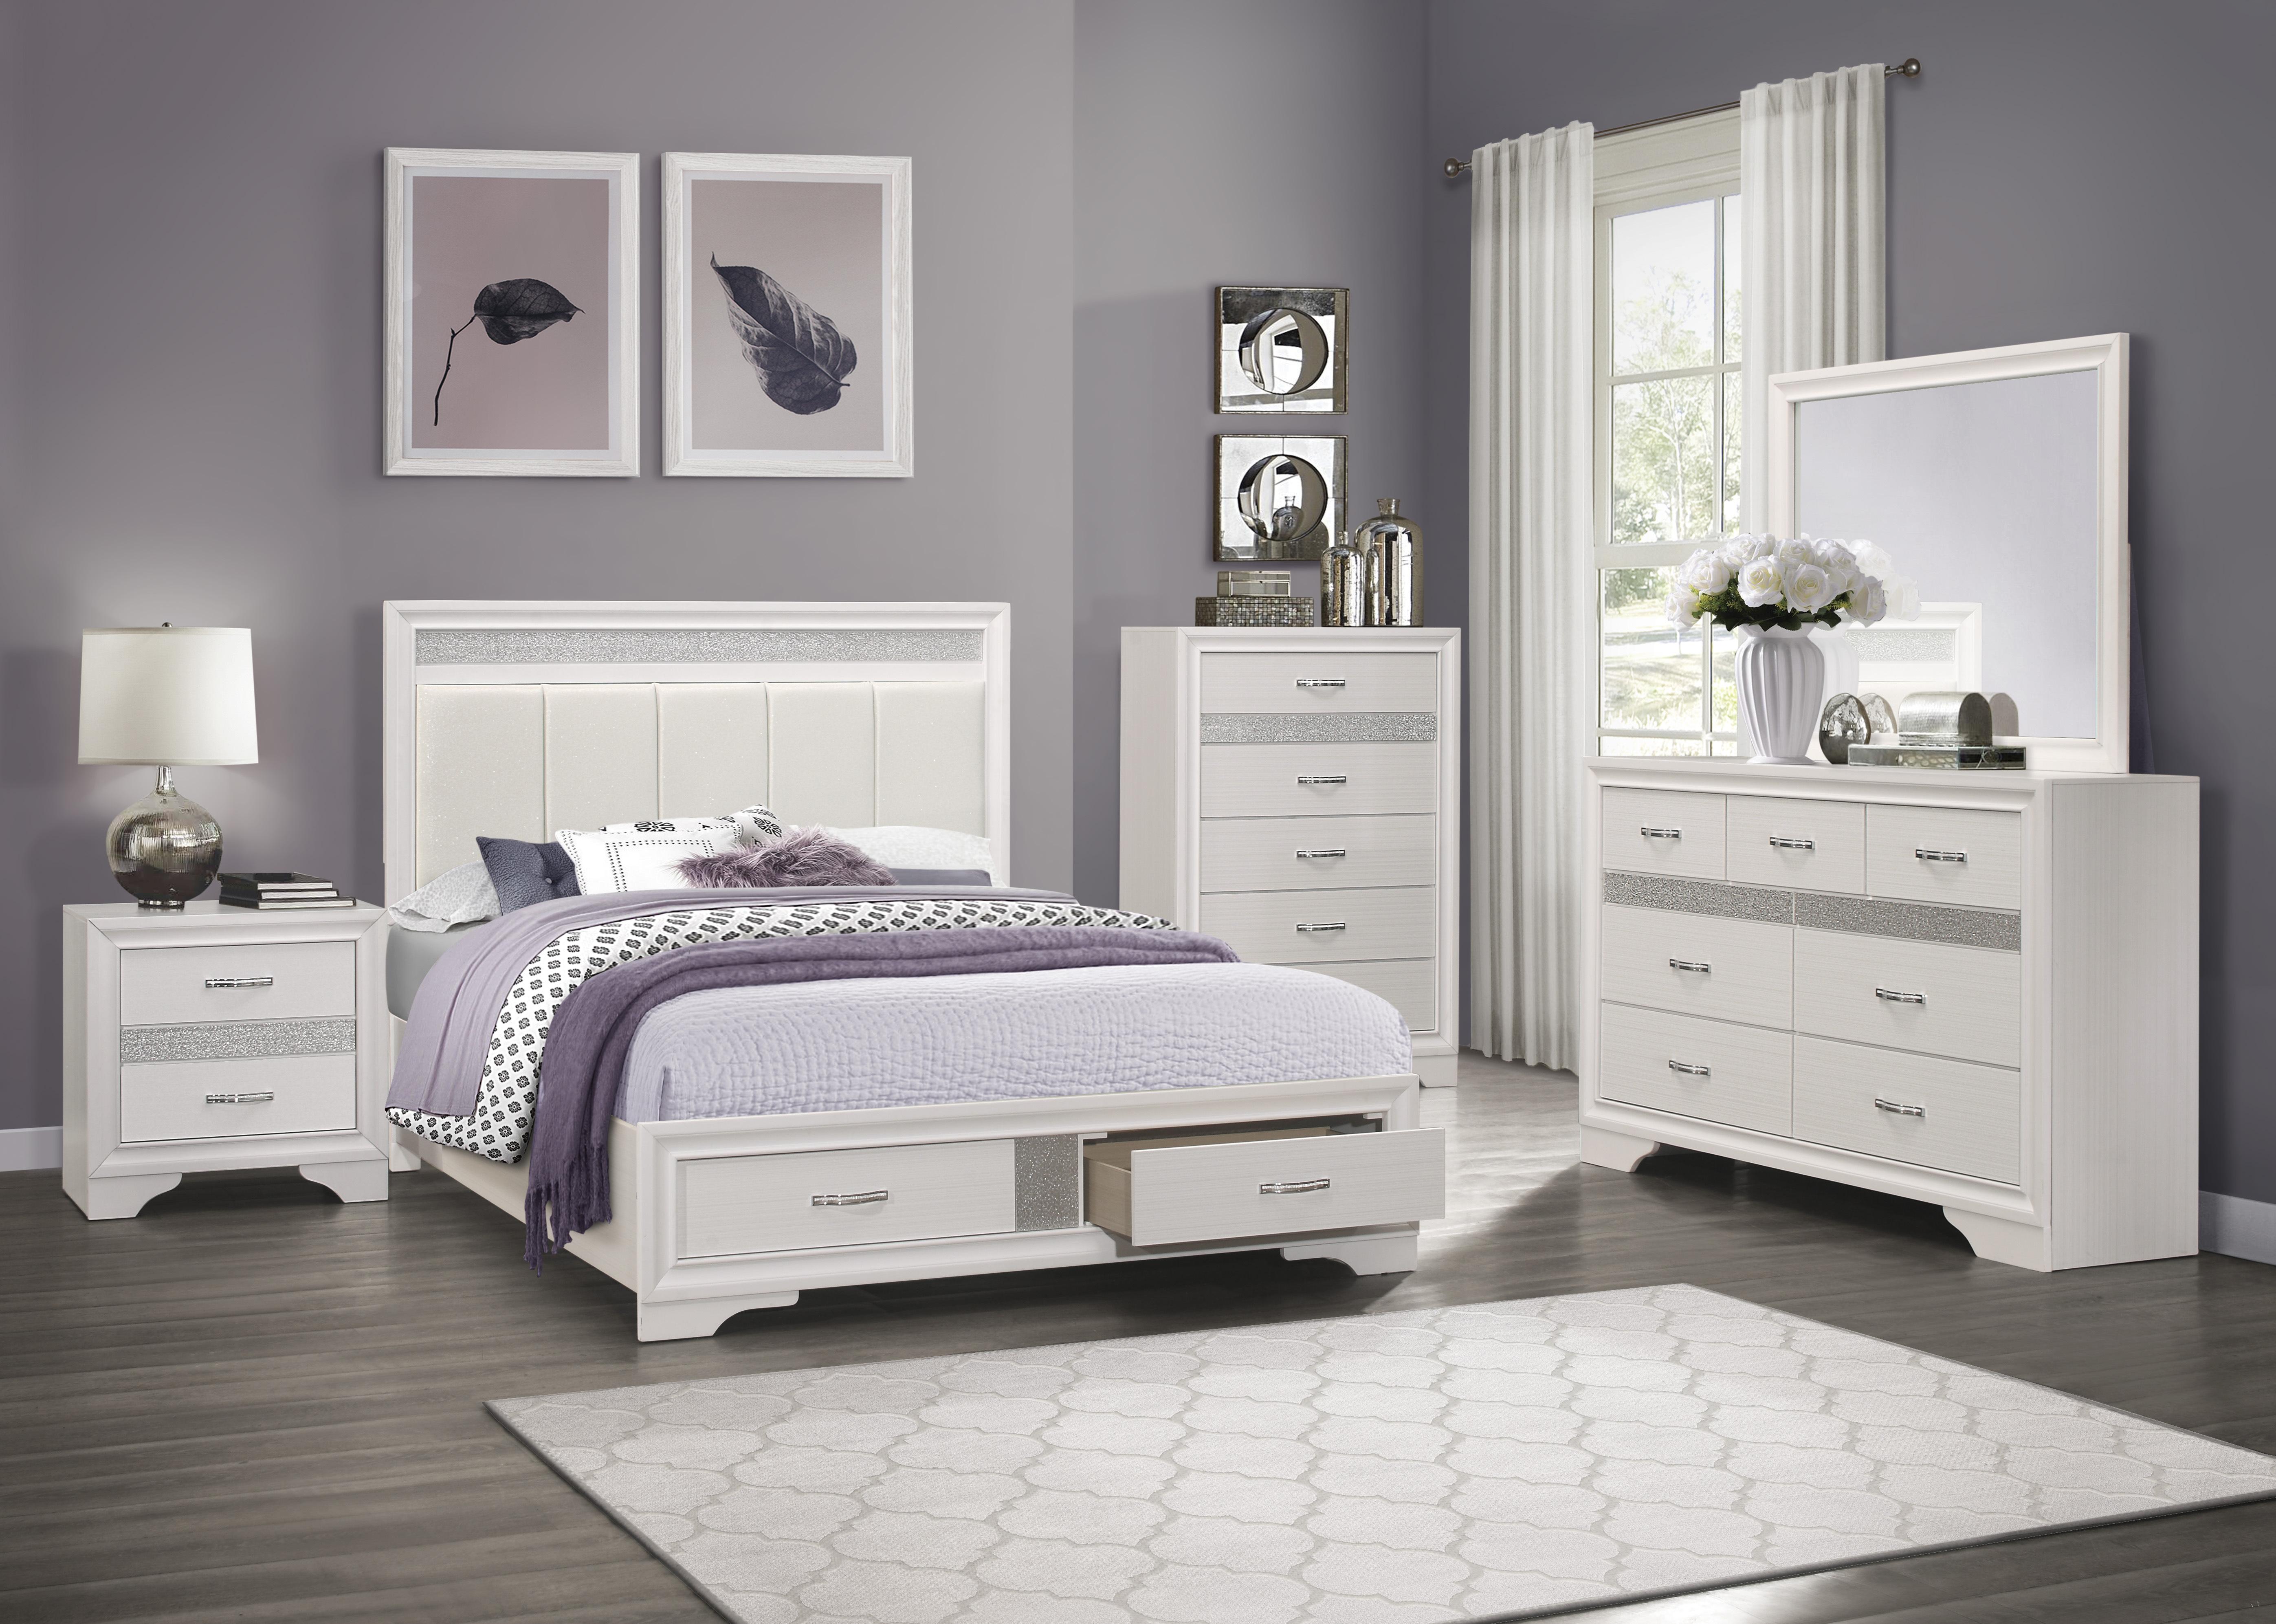 

    
Glam White & Silver Glitter Wood King Bedroom Set 6pcs Homelegance 1505WK-1EK* Luster
